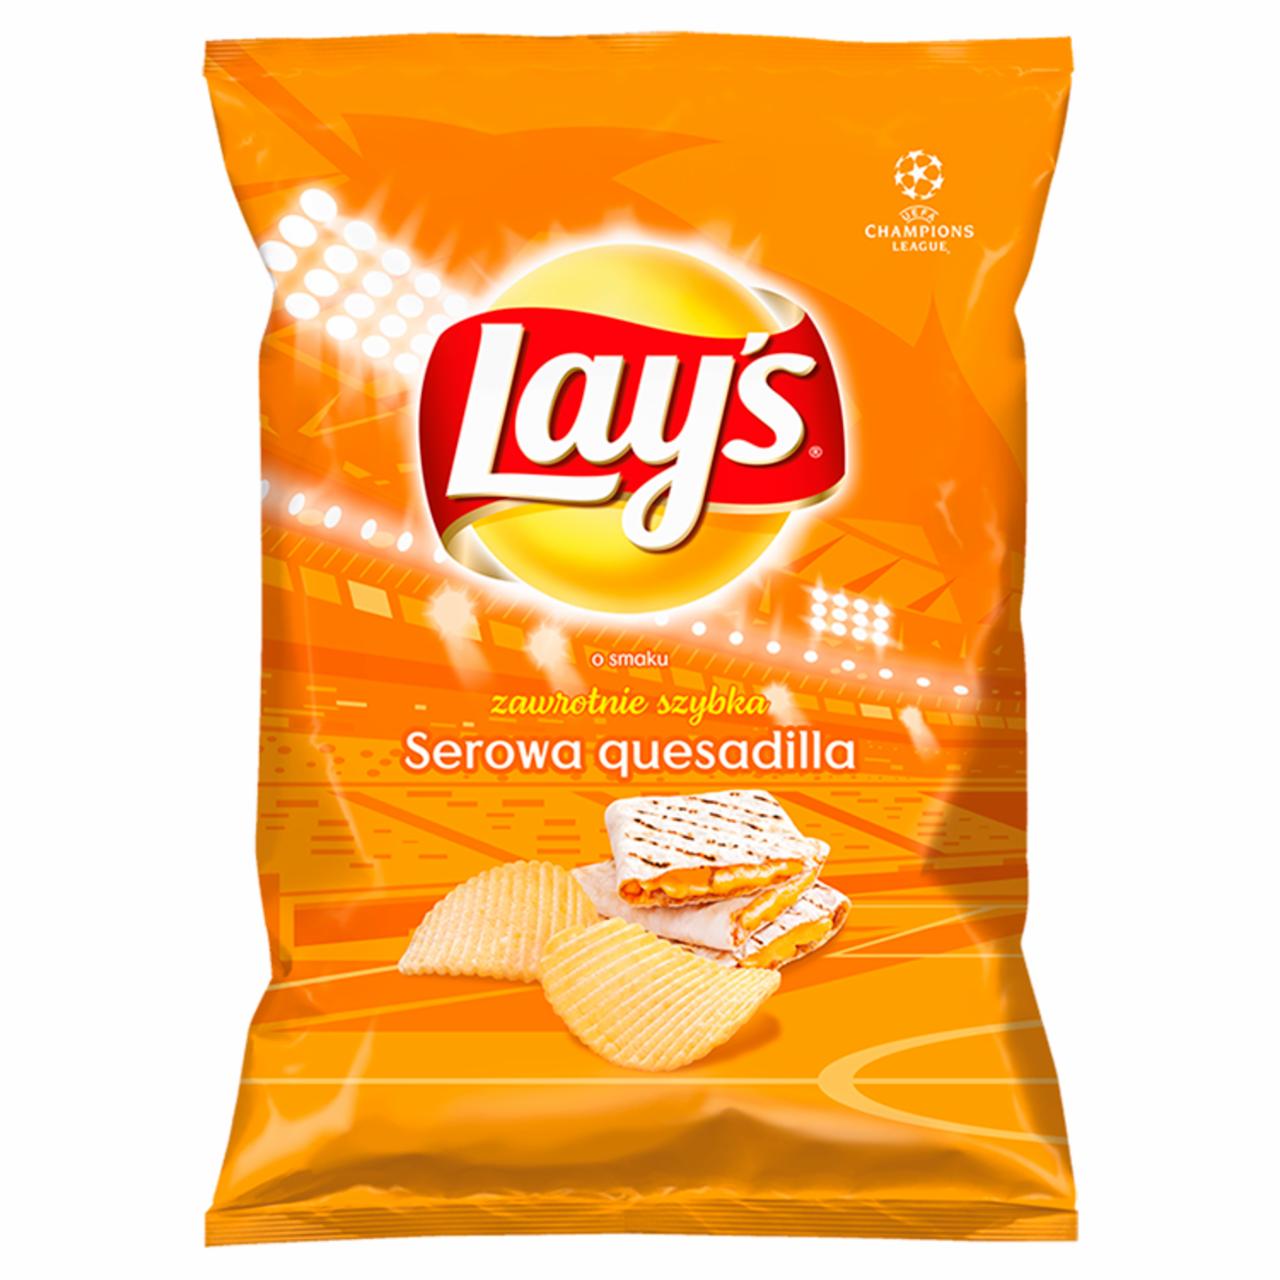 Zdjęcia - Lay's Chipsy ziemniaczane karbowane o smaku serowej quesadilli 40 g